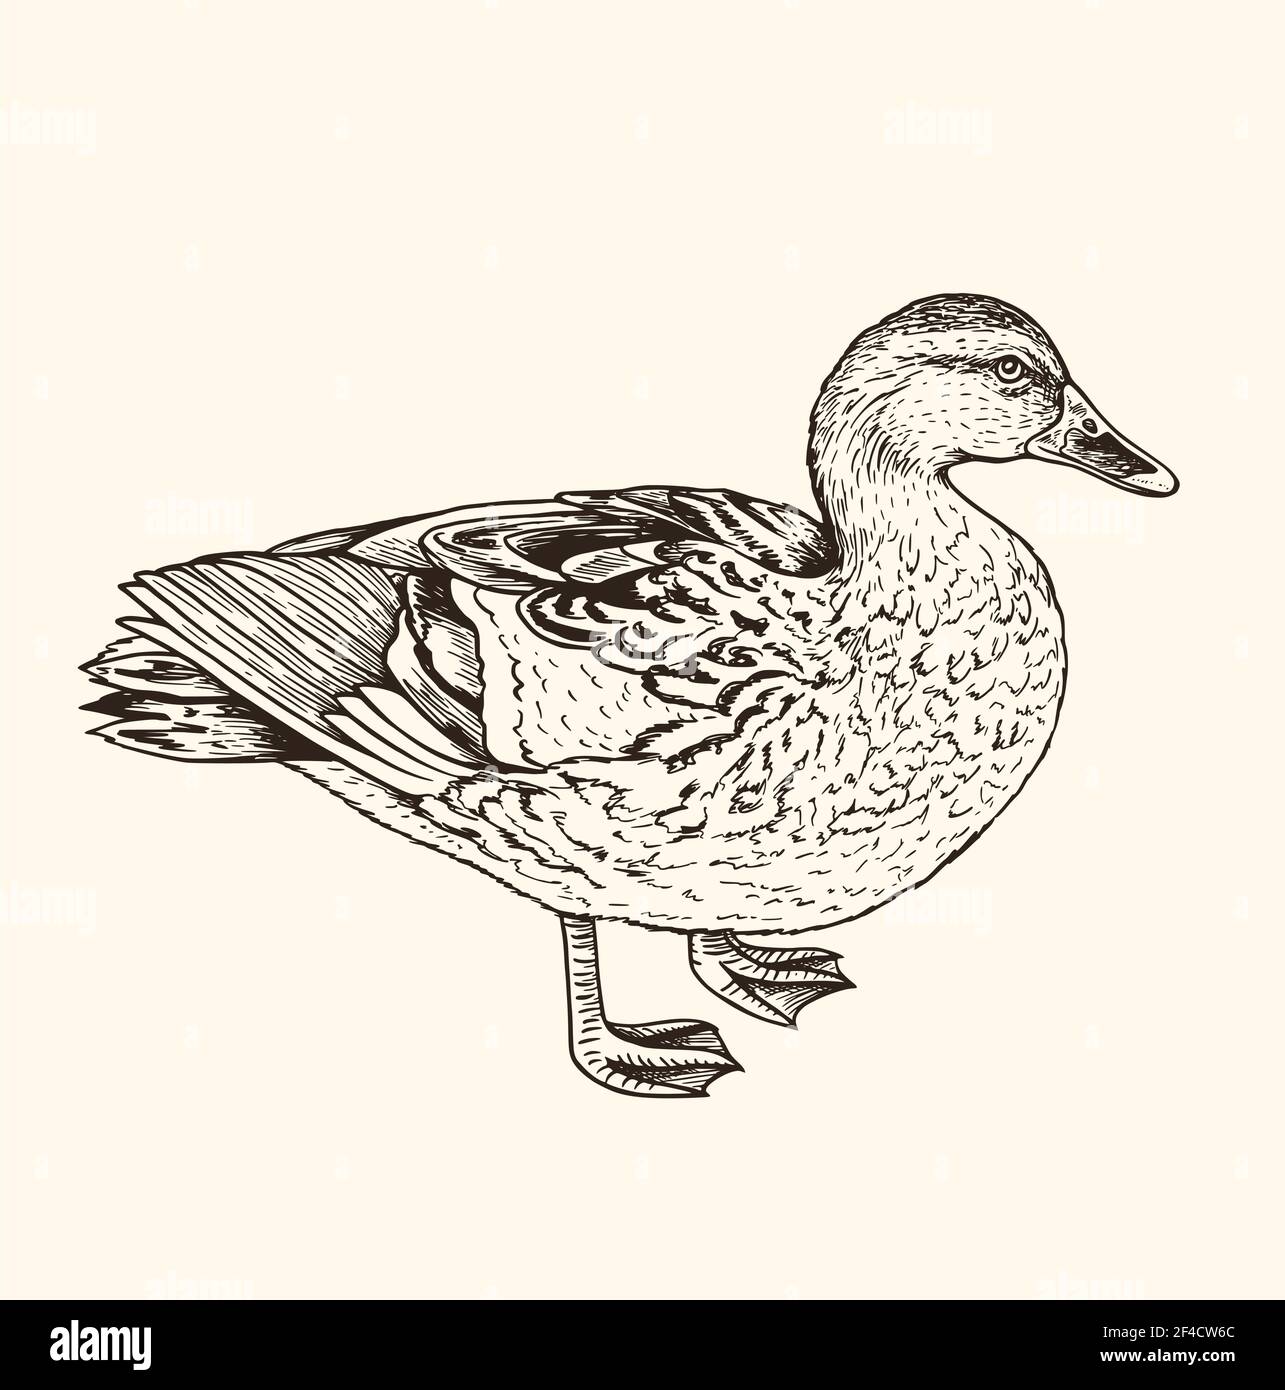 Handgezeichnete Vektordarstellung der Ente. Vintage Skizze von Tier in der wilden Natur Stock Vektor